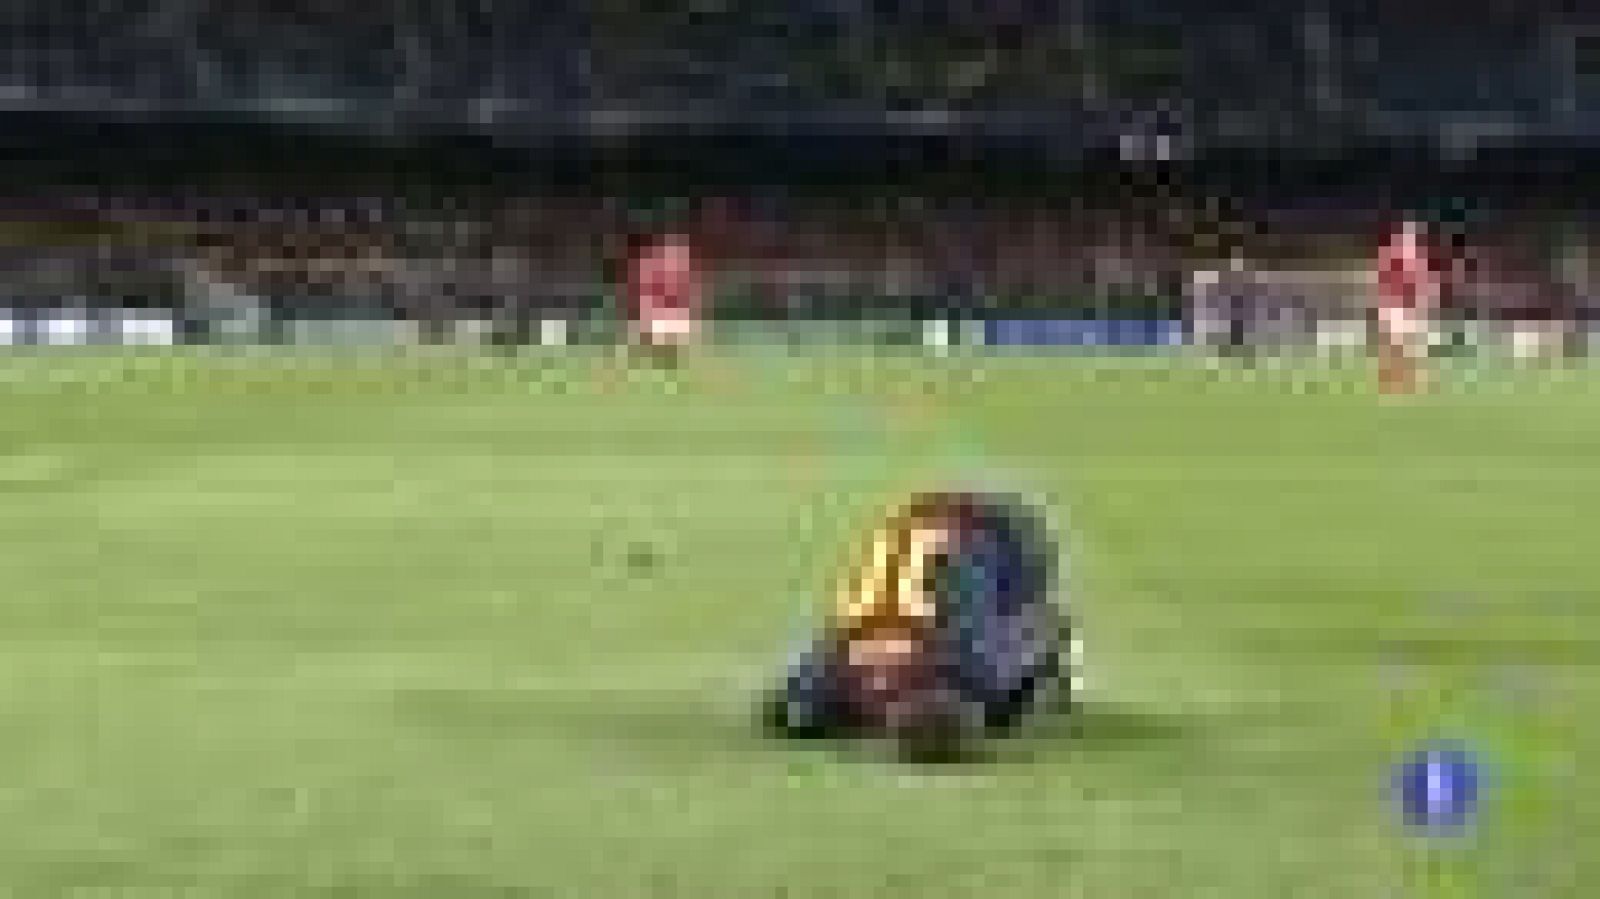 Messi dejó en vilo al Camp Nou en el partido de Champions ante el Benfica cuando fue evacuado del césped en camilla con gestos de dolor tras un choque con el portero luso. Afortunadamente todo quedó en un susto: una simple contusión en su rodilla izq